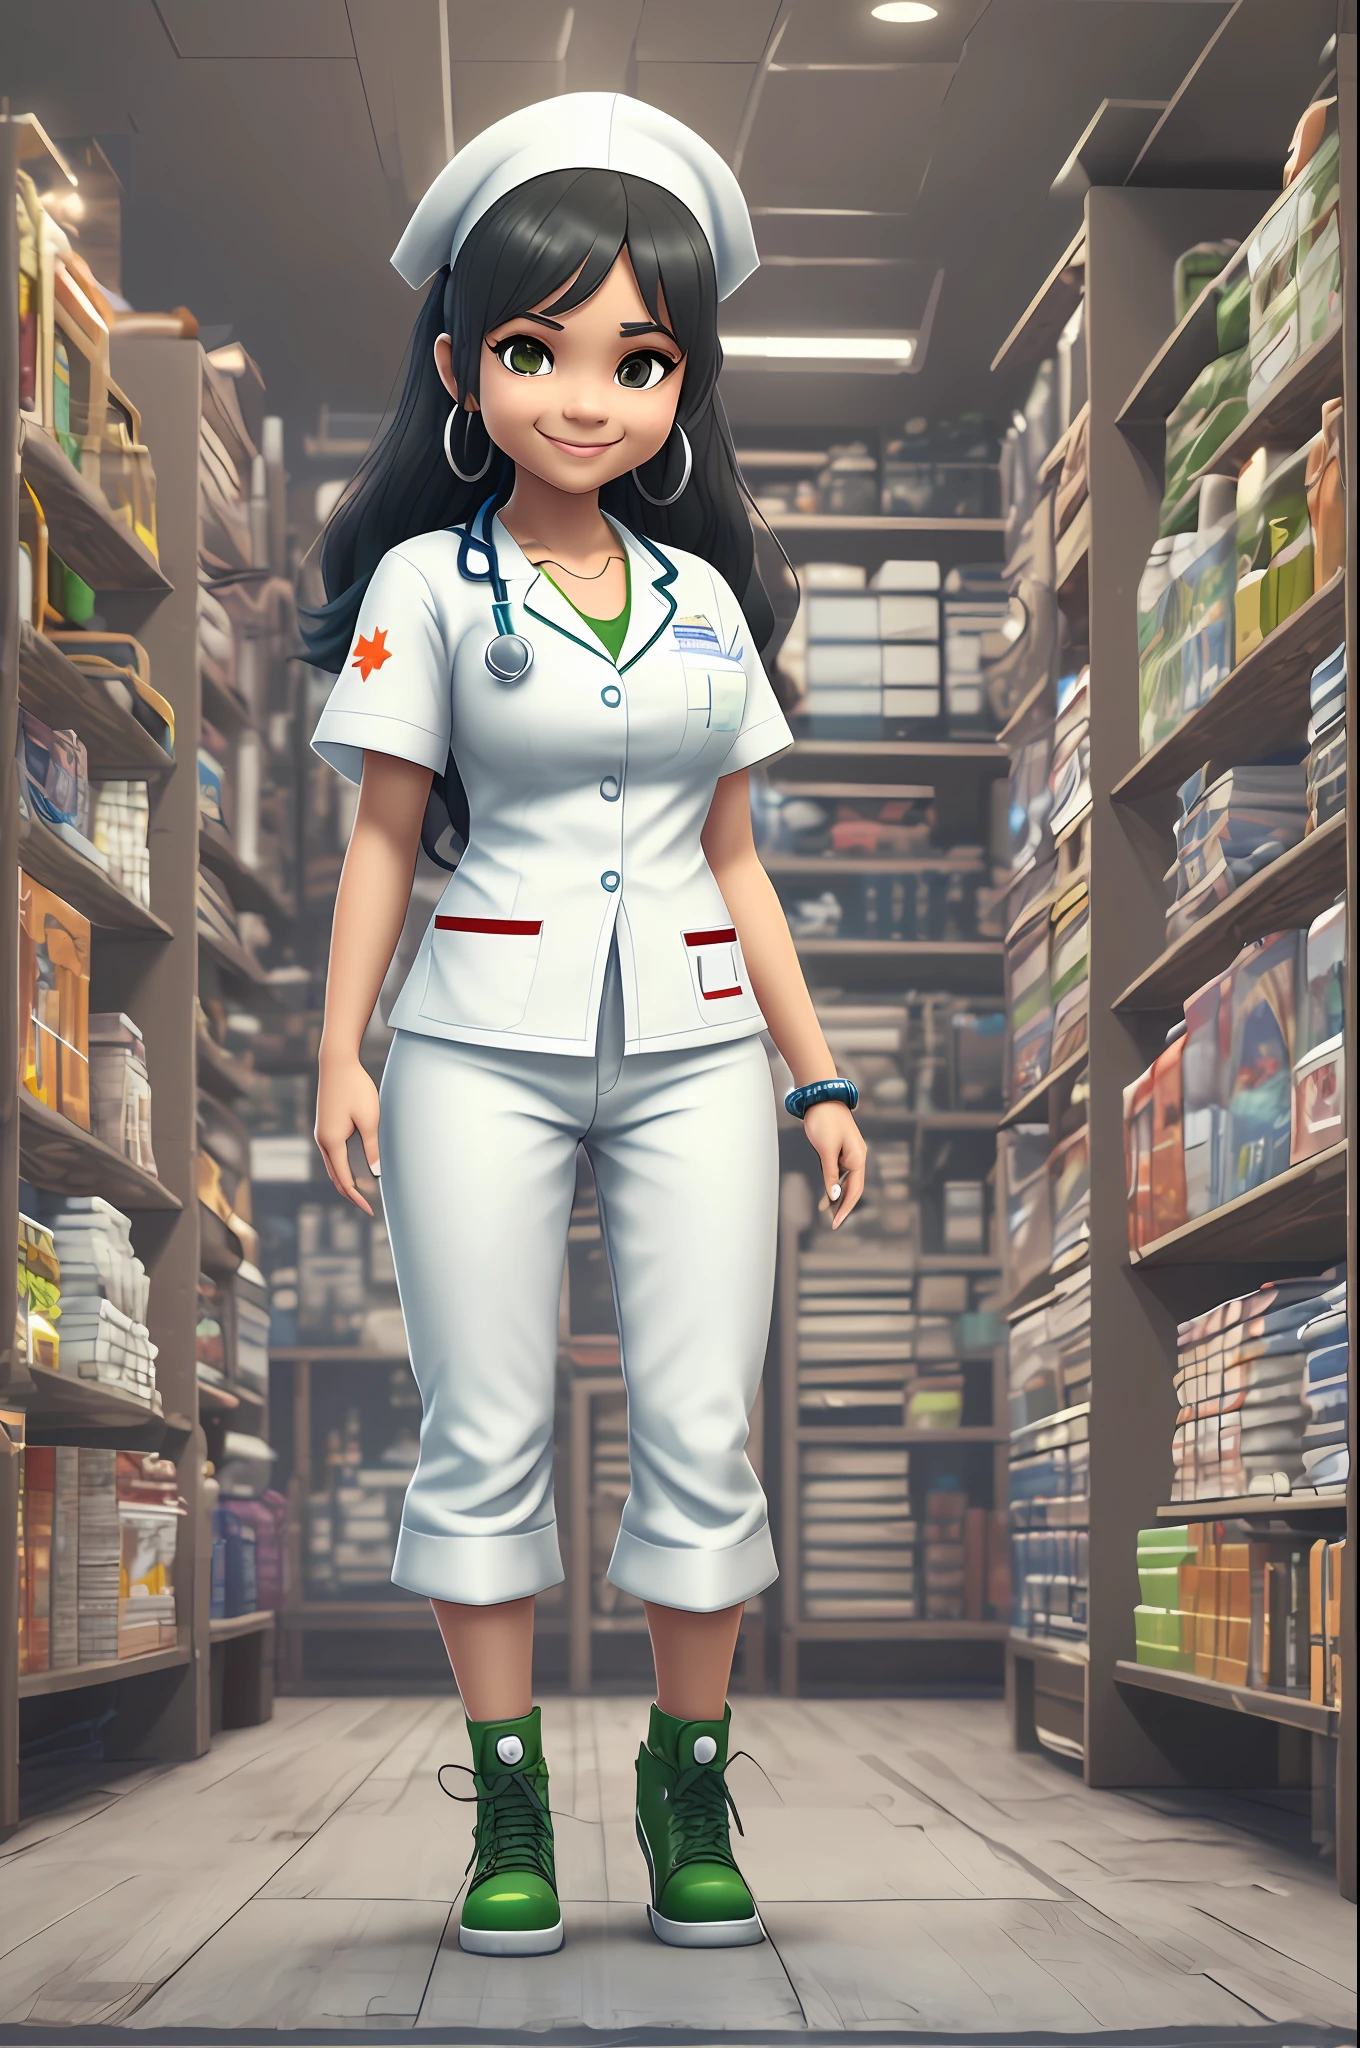 3D-изображение медсестры-мулатки в полный рост., вставать, в белых штанах милое улыбающееся лицо, карие глаза, длинные черные волосы, одета в белую форму медсестры с небольшими зелеными и синими вставками в стиле чиби и Диснея., нет фона, подробный, сверхвысокое разрешение, 8К, в стиле Quixel Megascans, Магазин 3D-сканирования и Epic Games